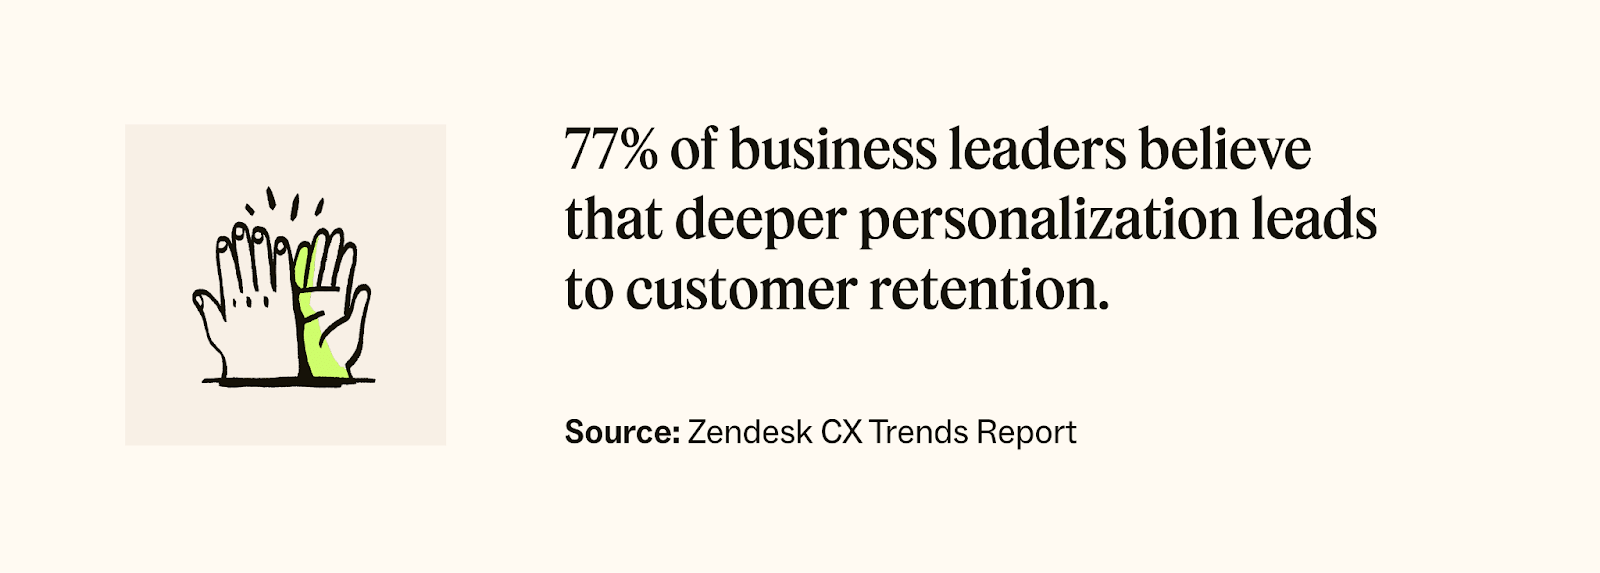 Zendesk CX Trends Report stat